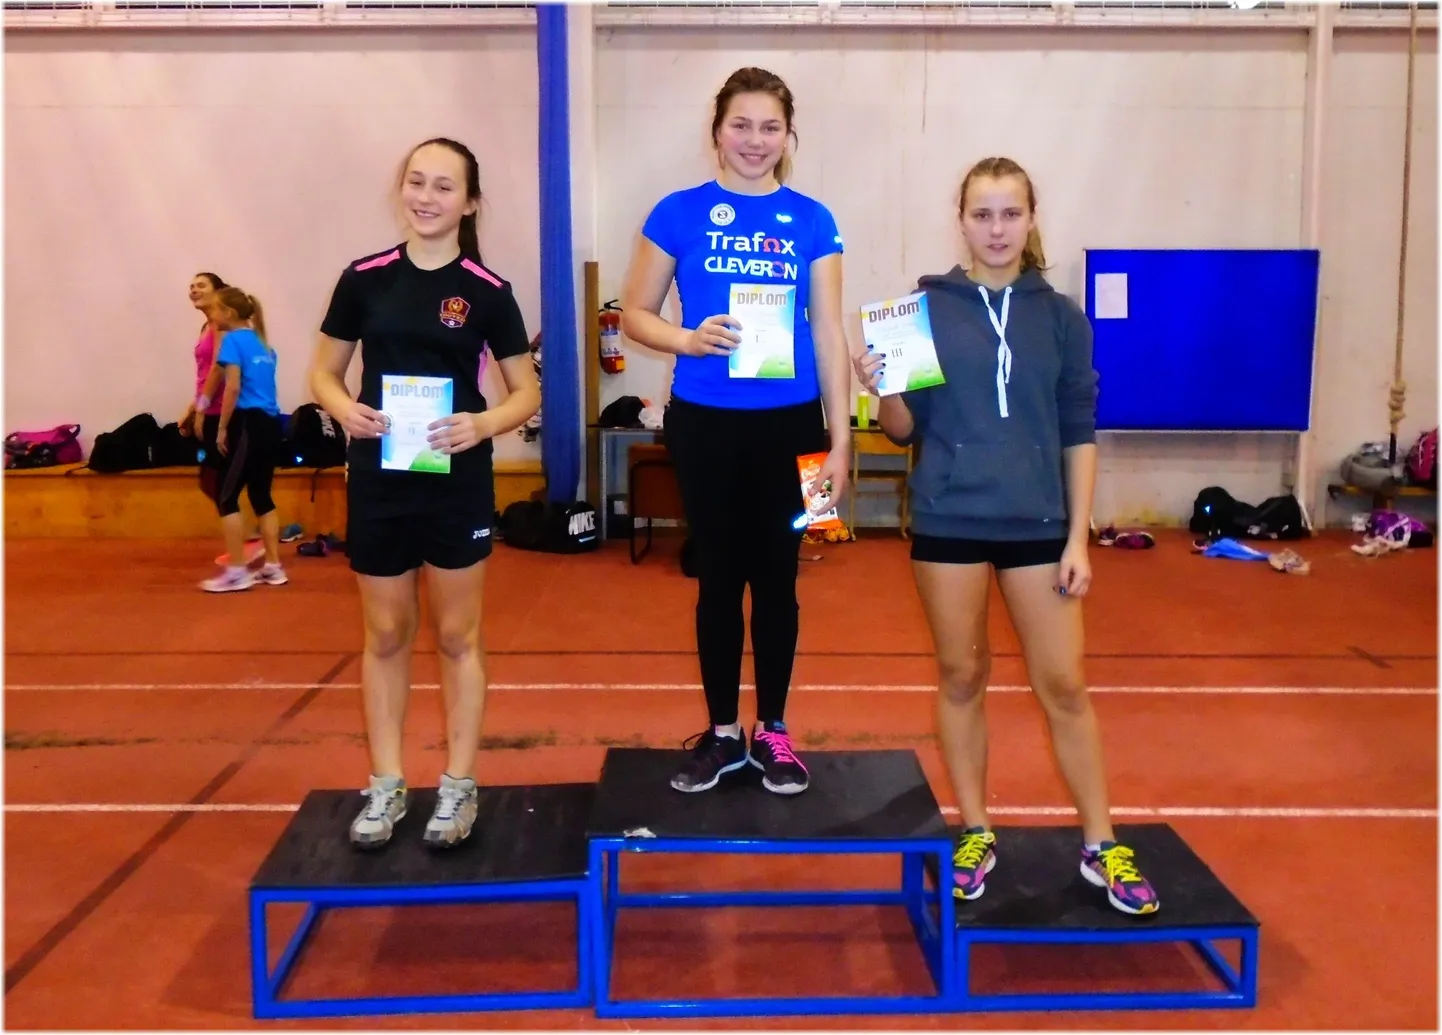 Tütarlaste kuulitõuke kolm edukamat: võitja Kelly Heinpõld, teise koha teeninud Anna Liisa Joandi ning kolmas olnud Margaret Neering.